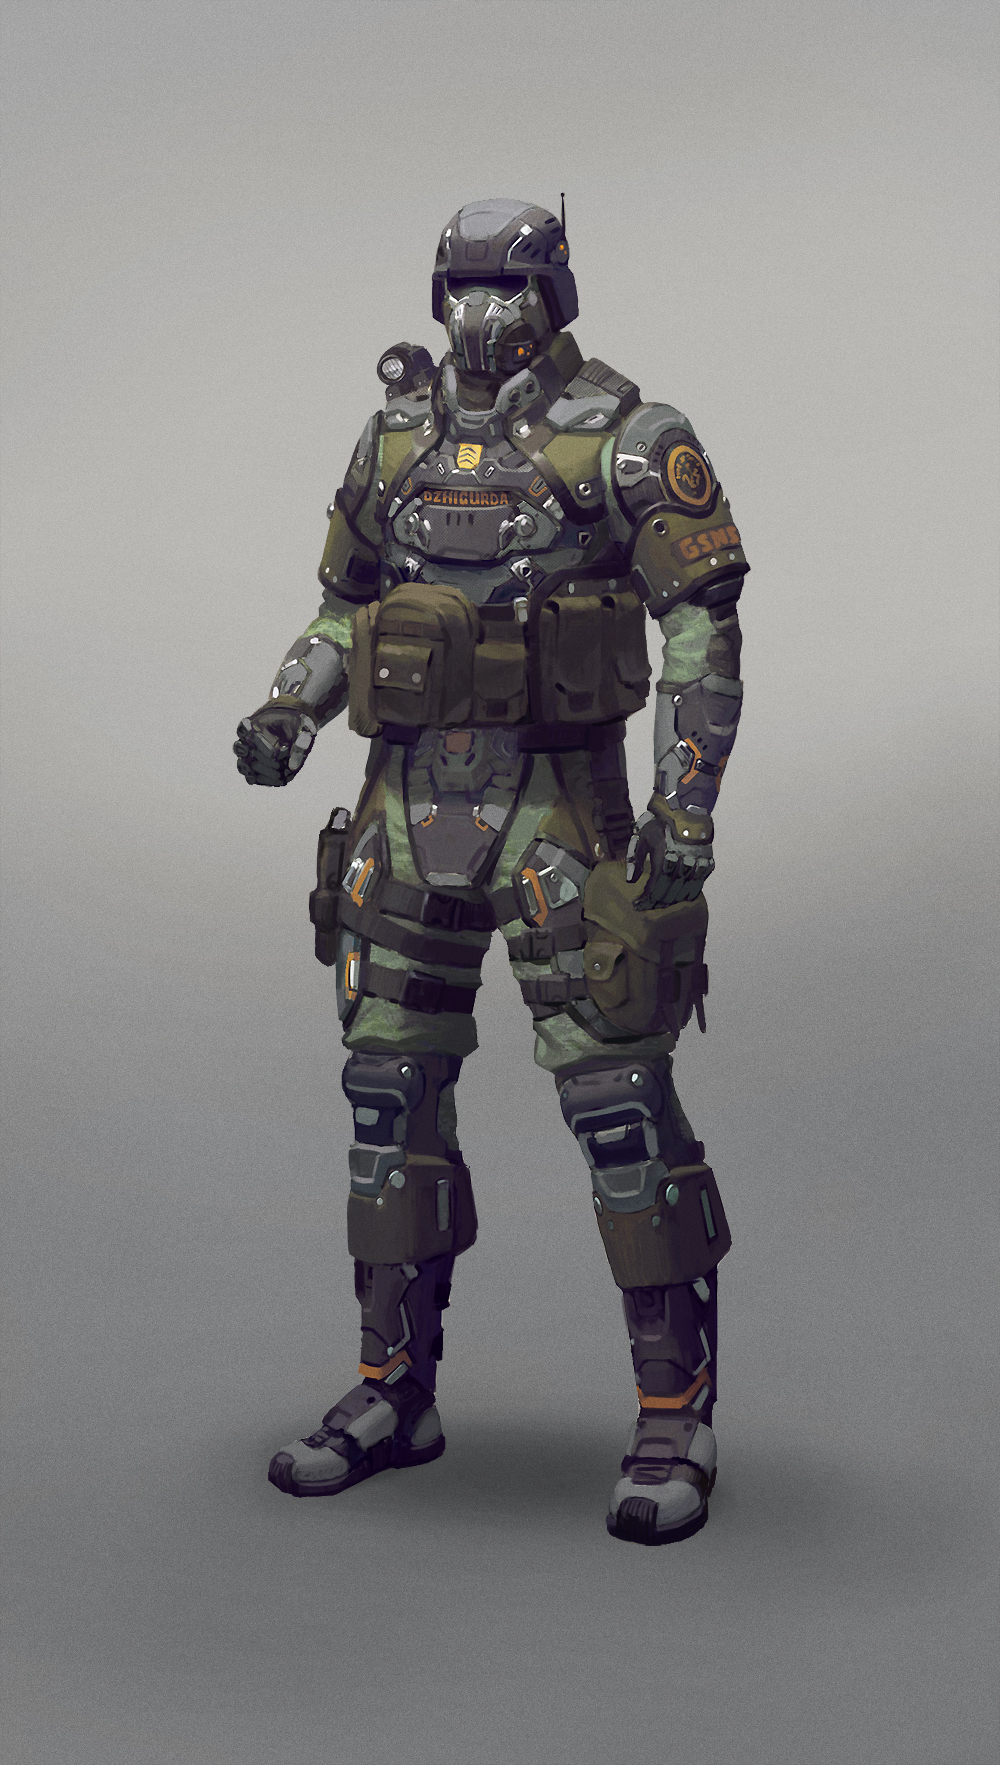 Futuristic Armor Concept for Combat